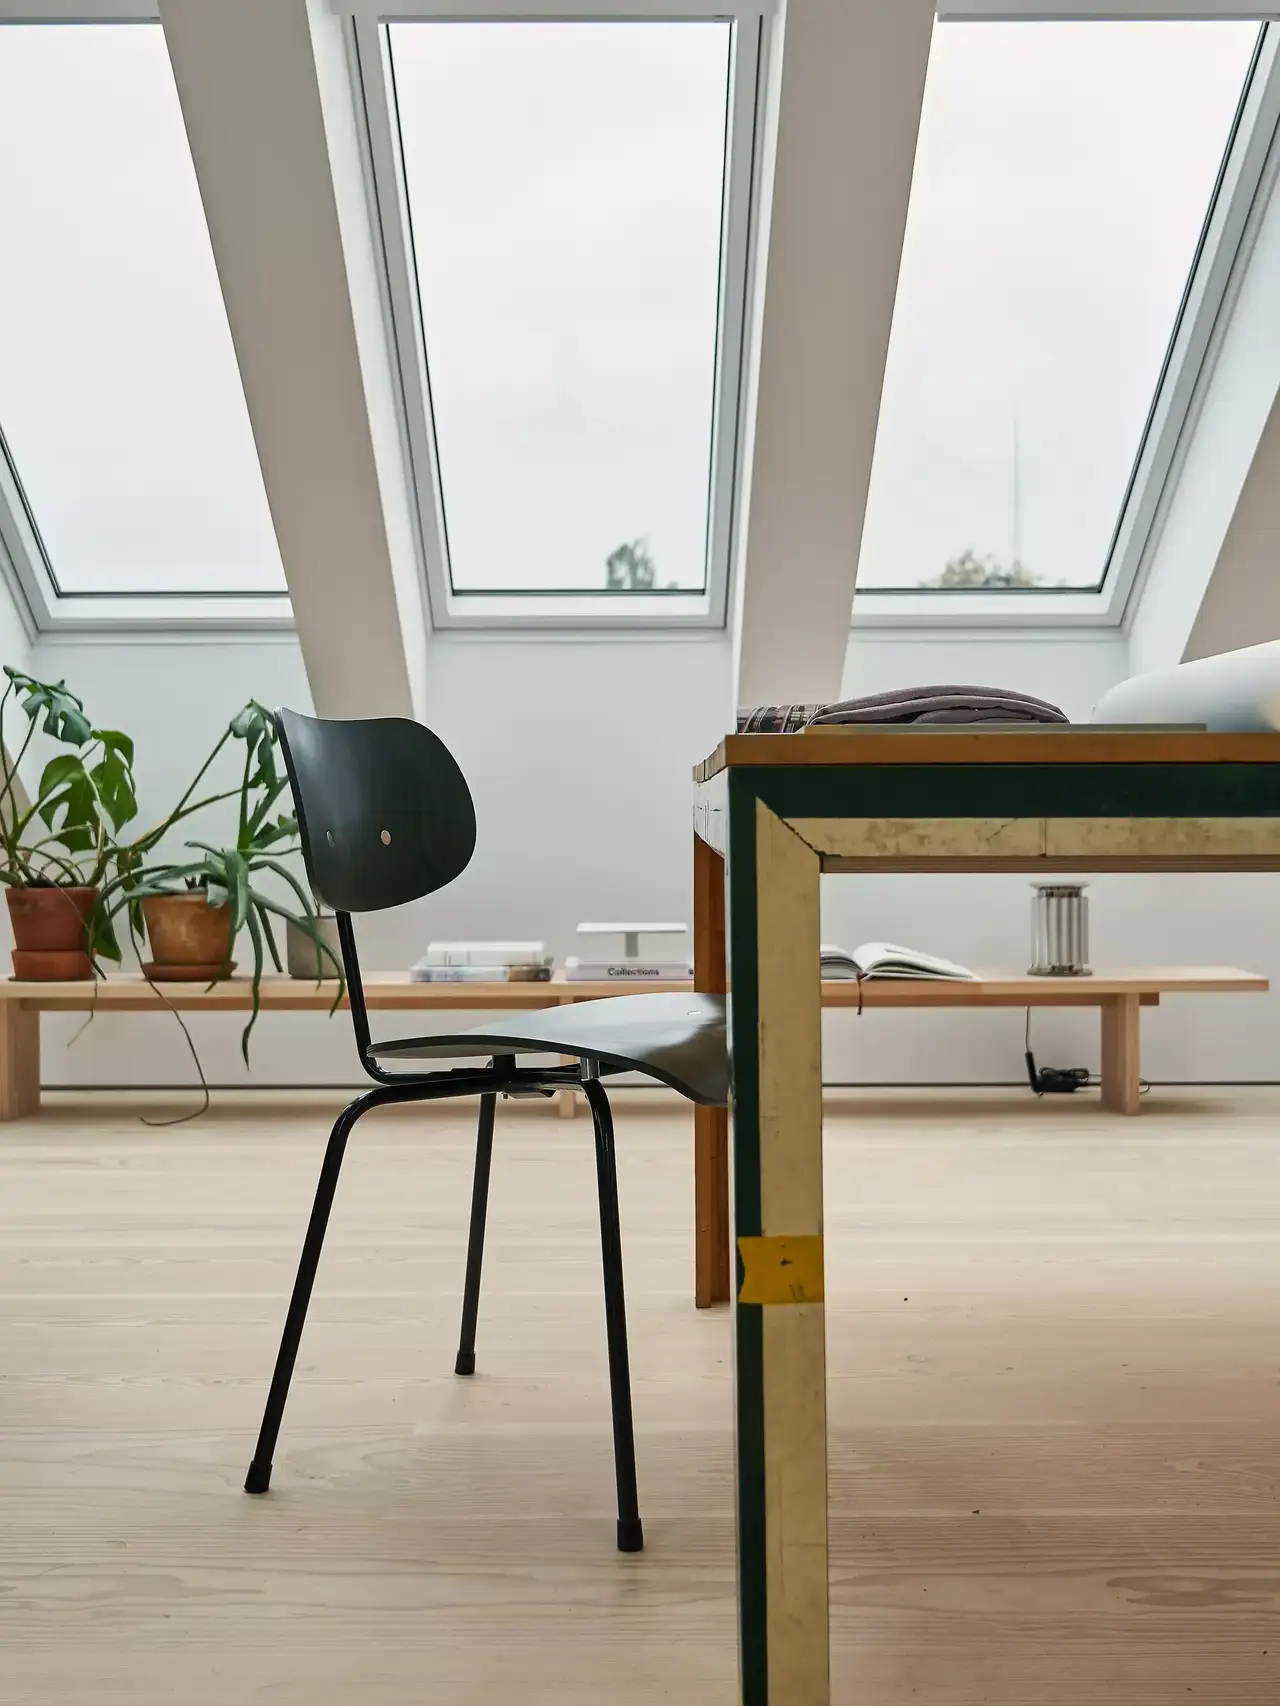 Modernes Home-Office mit natürlichem Licht durch VELUX Dachflächenfenster und minimalistischen Möbeln.